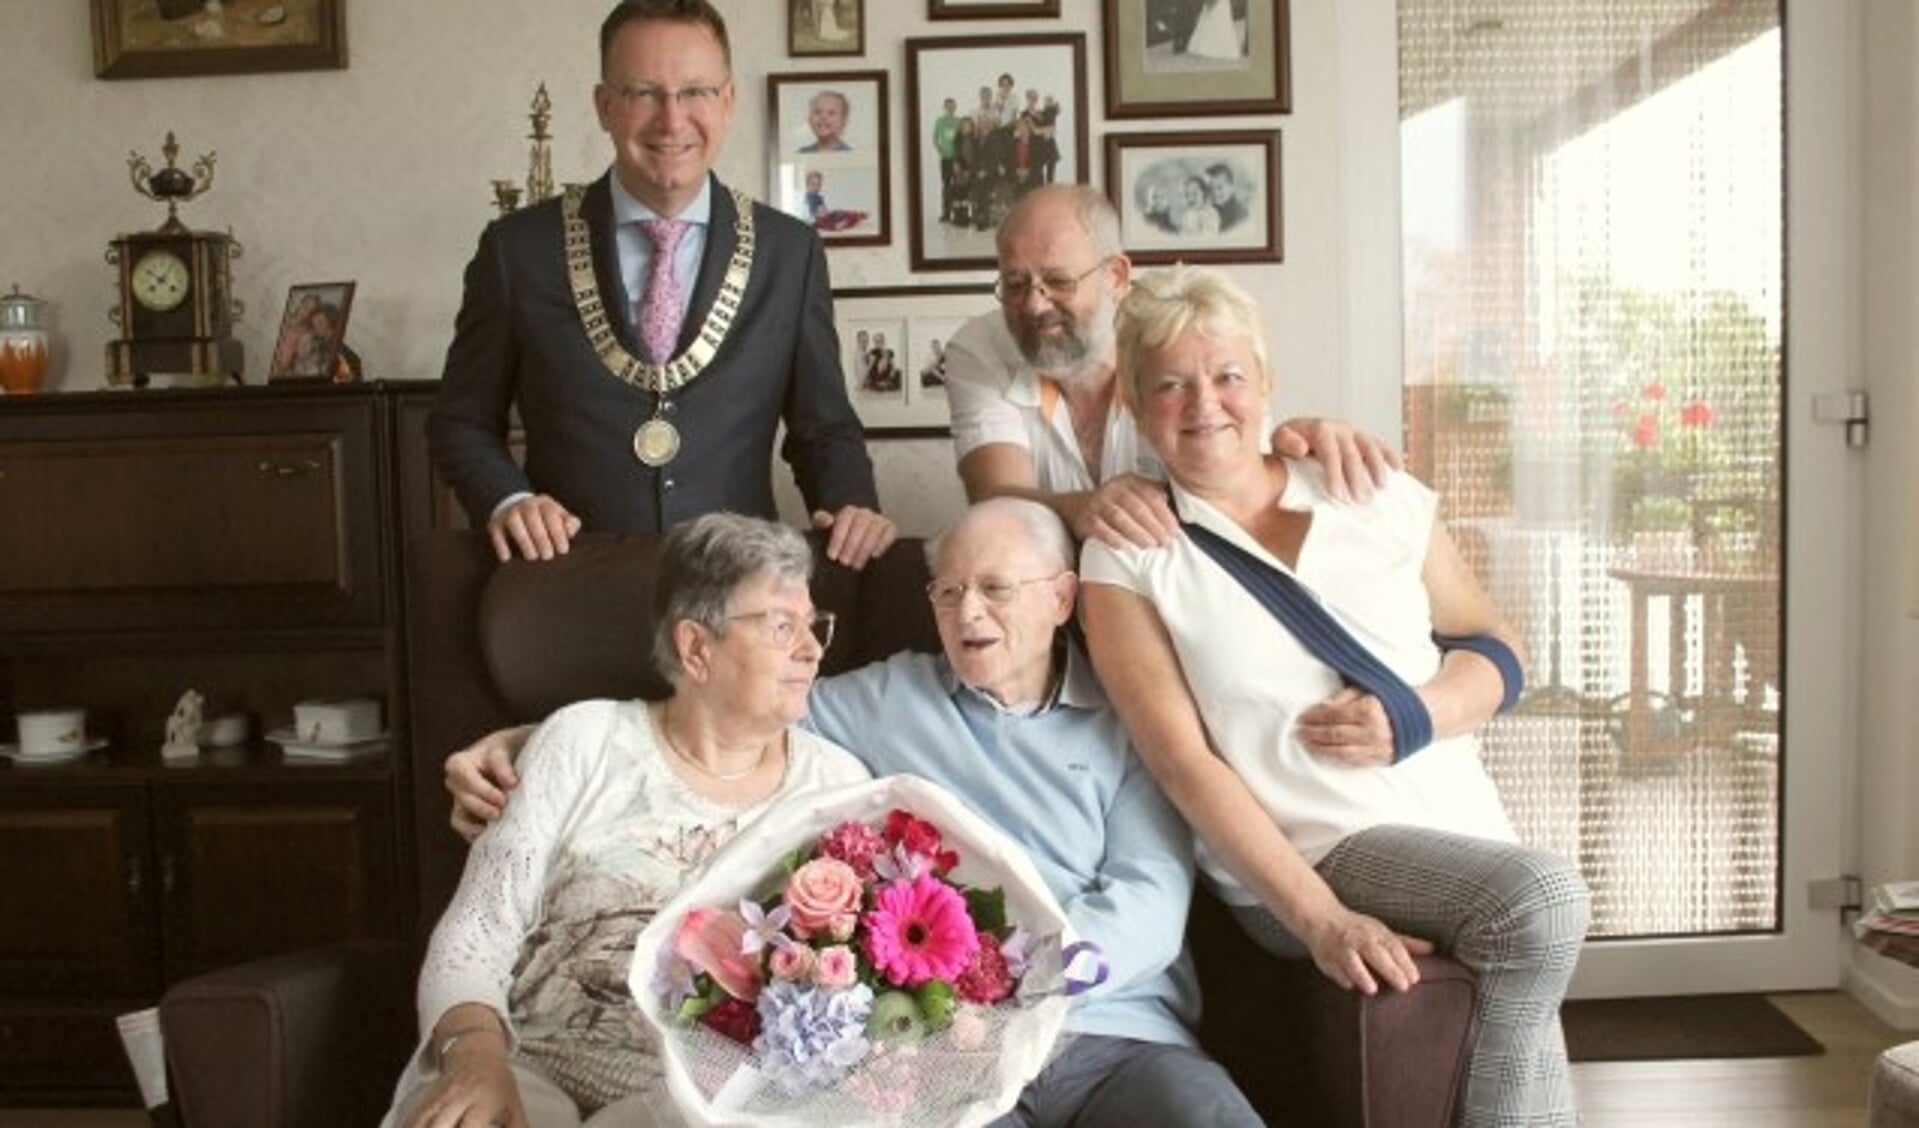 Na een jaar verkering en 60 jaar samen nog altijd gelukkig: het echtpaar Plug, omringd door zoon Jan met echtgenote en burgemeester Van Domburg. (Foto: Lysette Verwegen)